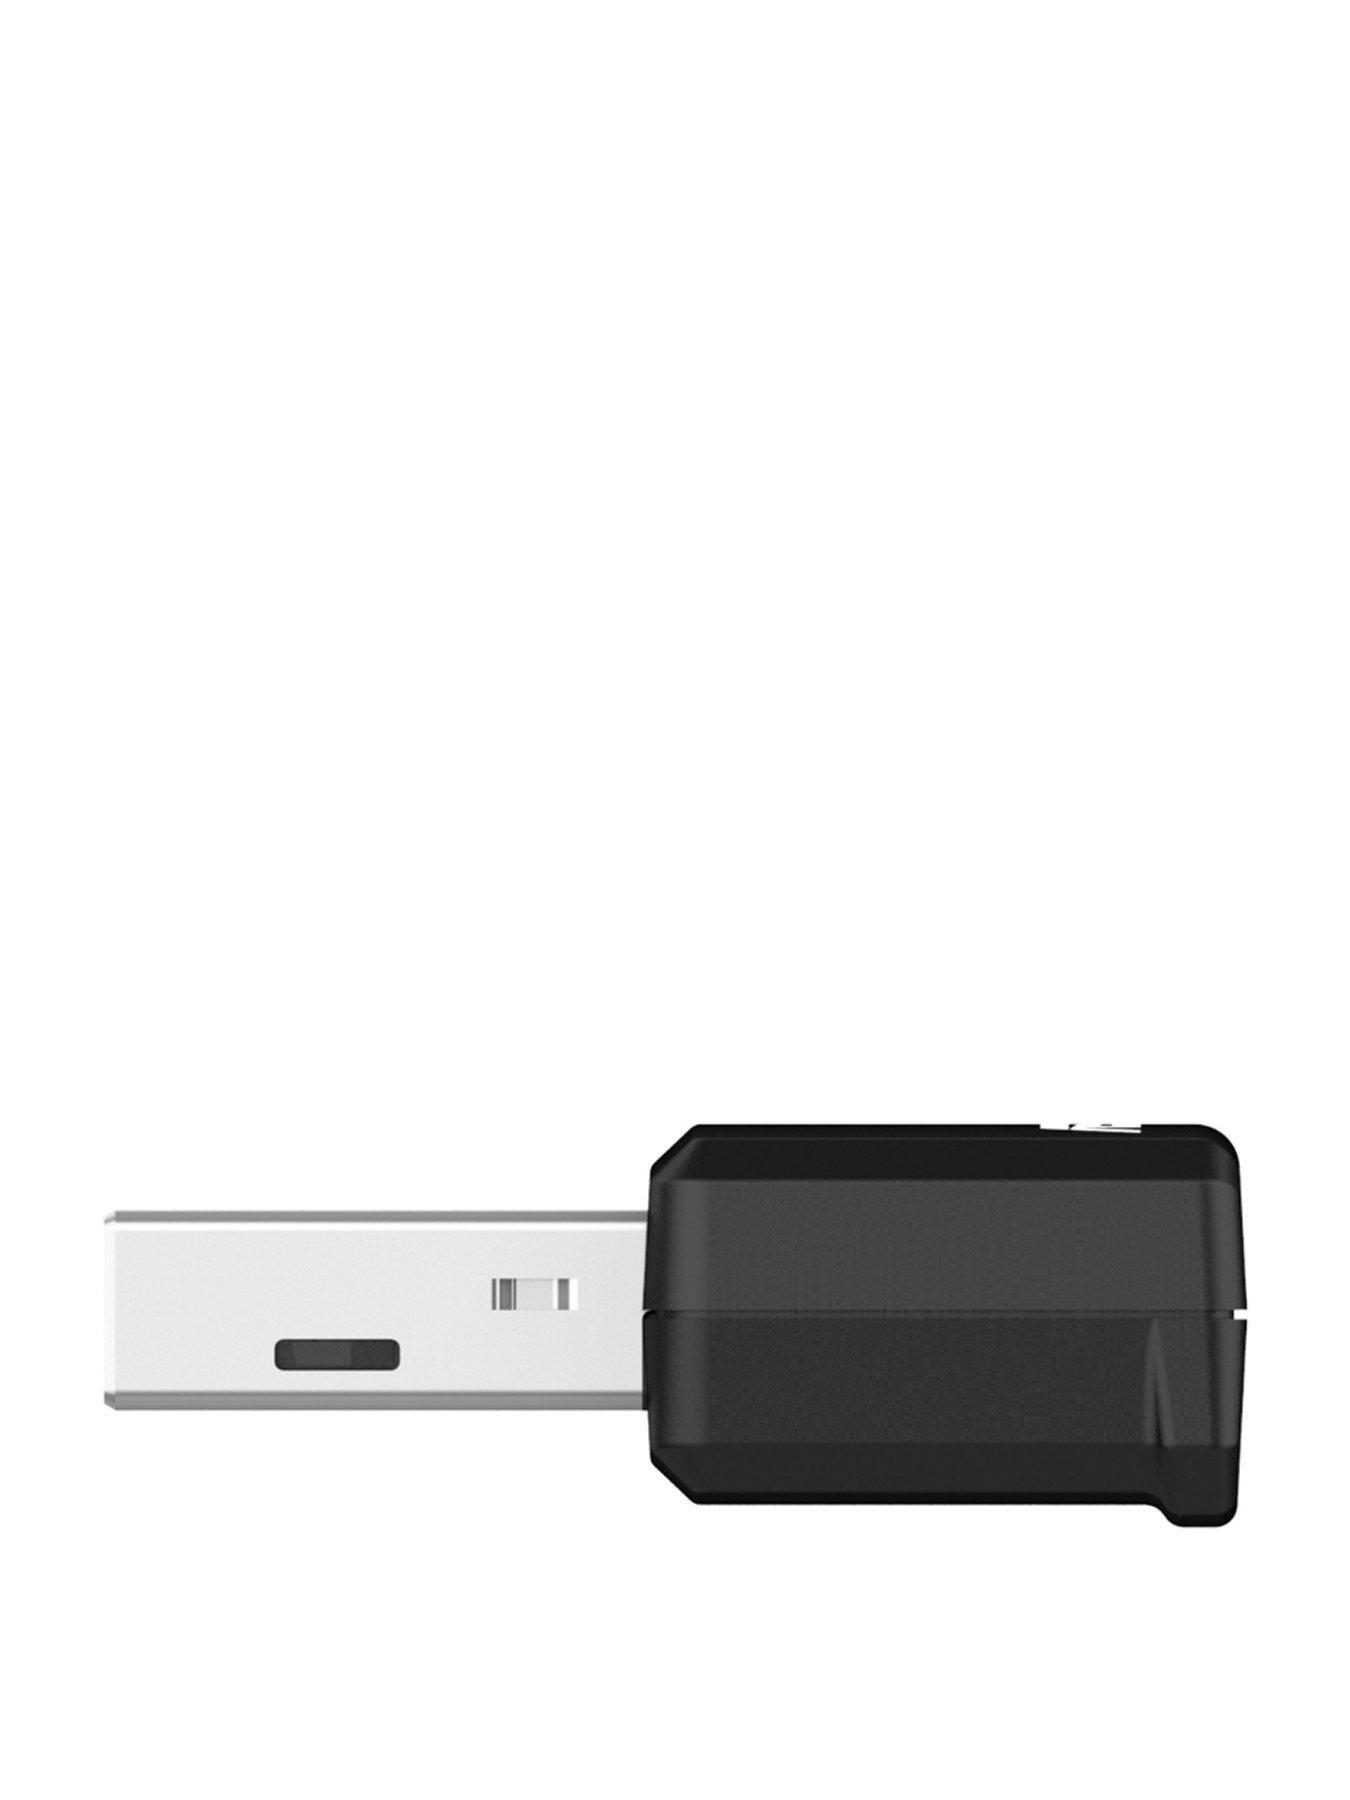 Asus USB-AX55 Nano: Trình kết nối Wi-Fi vô cùng tiện lợi và hiệu quả, giúp tăng tốc độ internet, đảm bảo trải nghiệm trực tuyến tuyệt vời. Thiết kế nhỏ gọn, dễ dàng sử dụng.